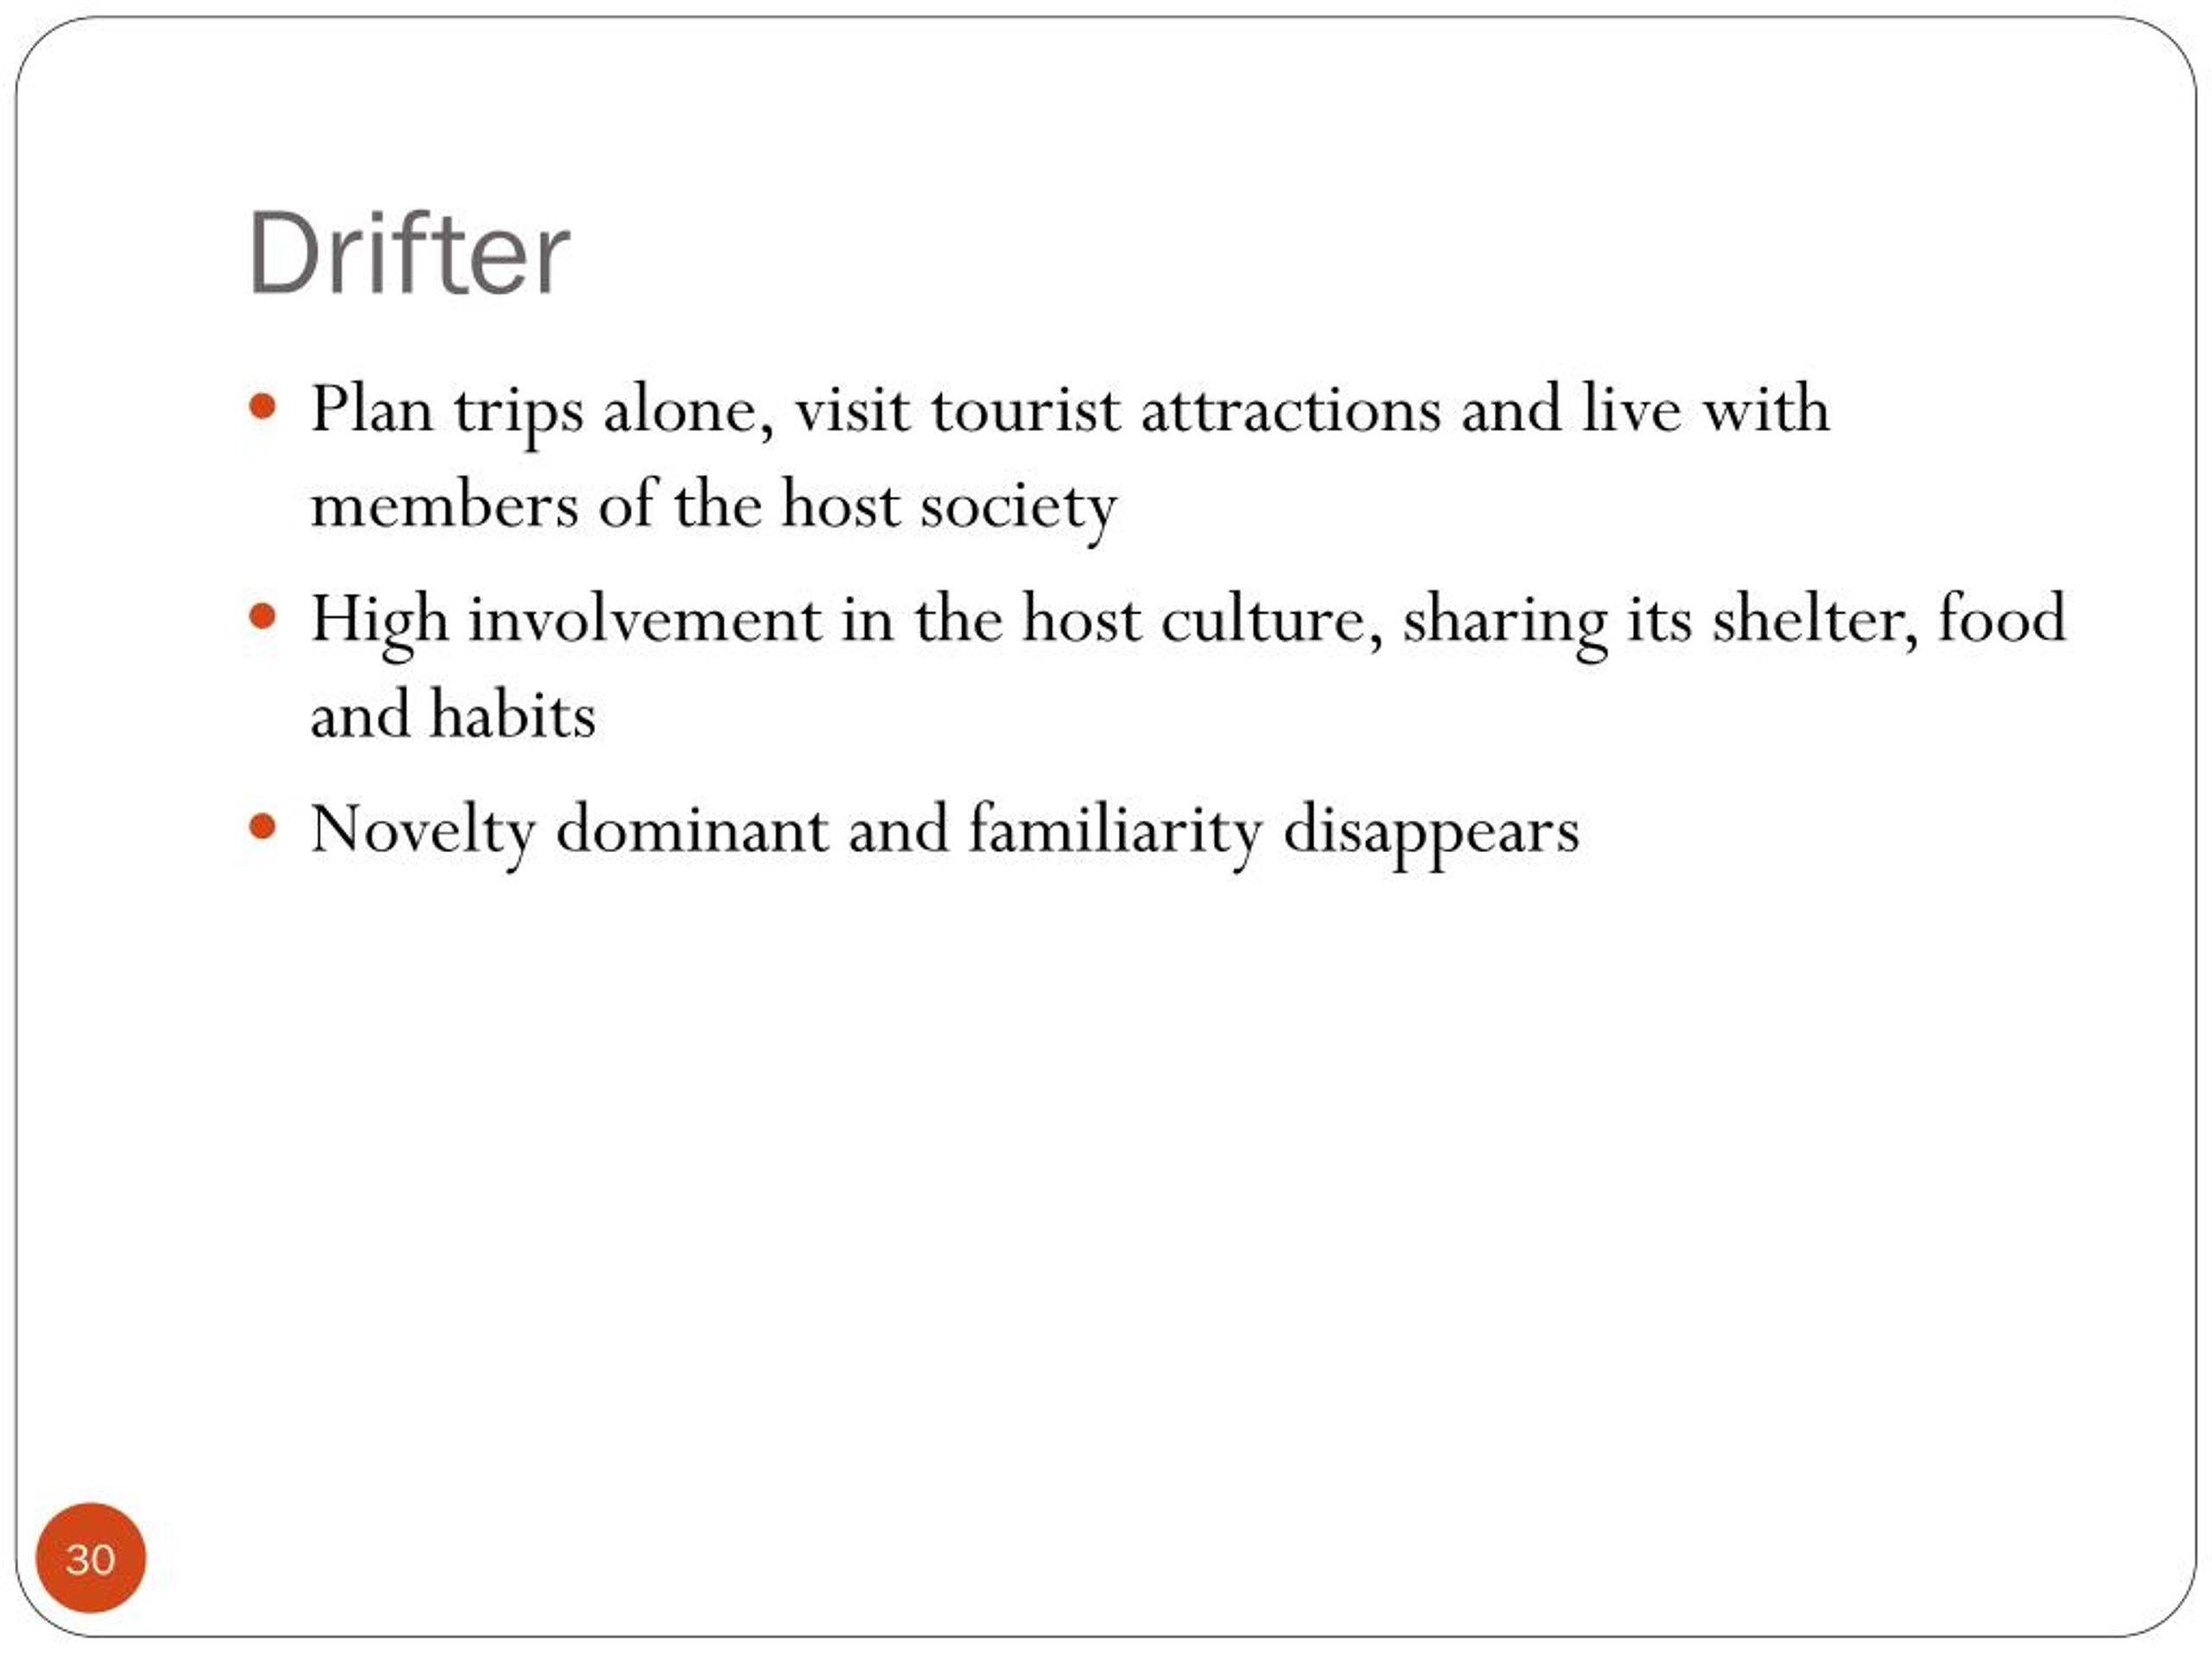 drifter tourist definition